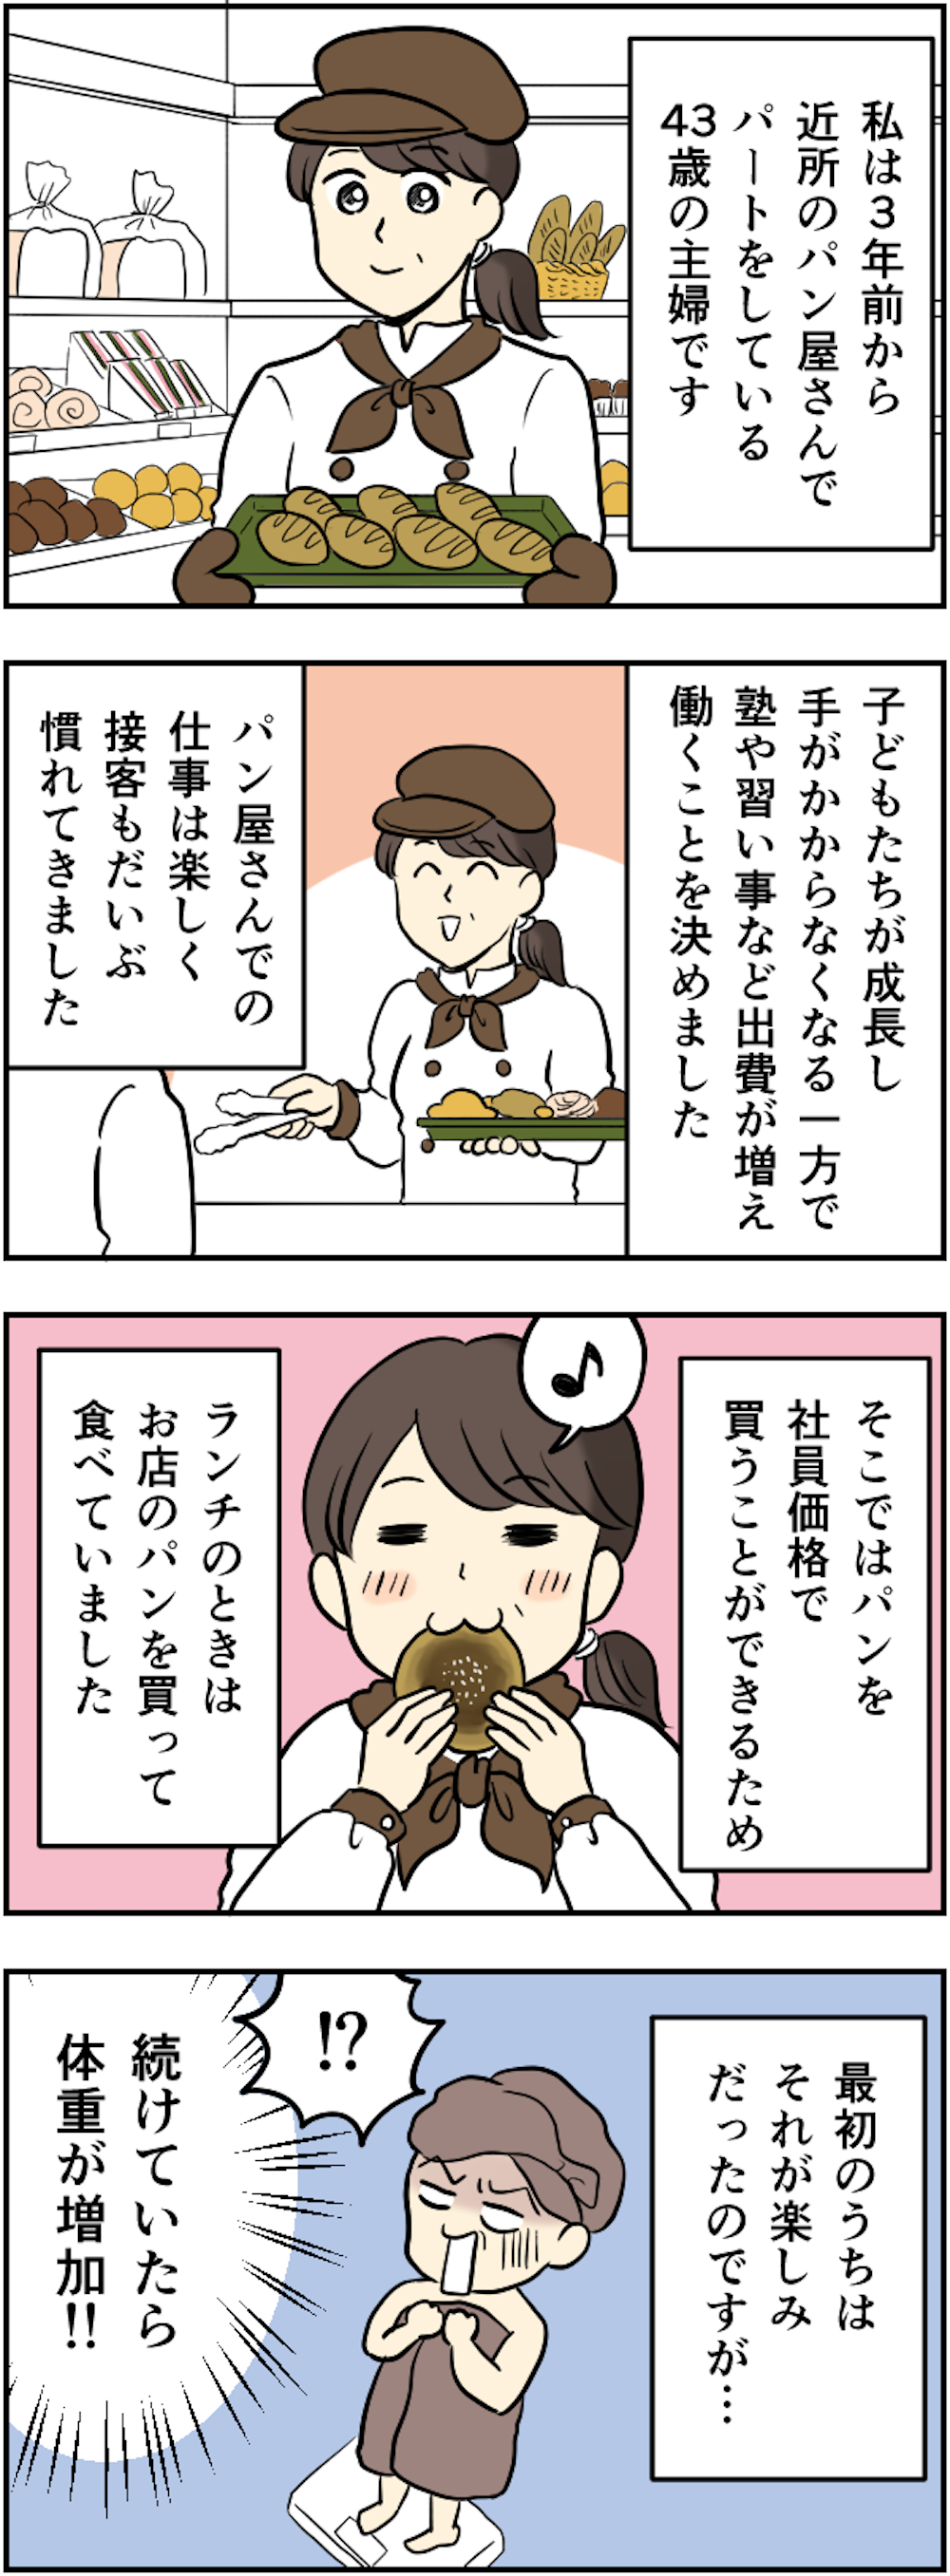 【漫画】パートの昼休み「一人でお弁当」が好きな私。でも「ゴージャス弁当」持参の先輩が現れ＜前編＞ 64kansei_001.png